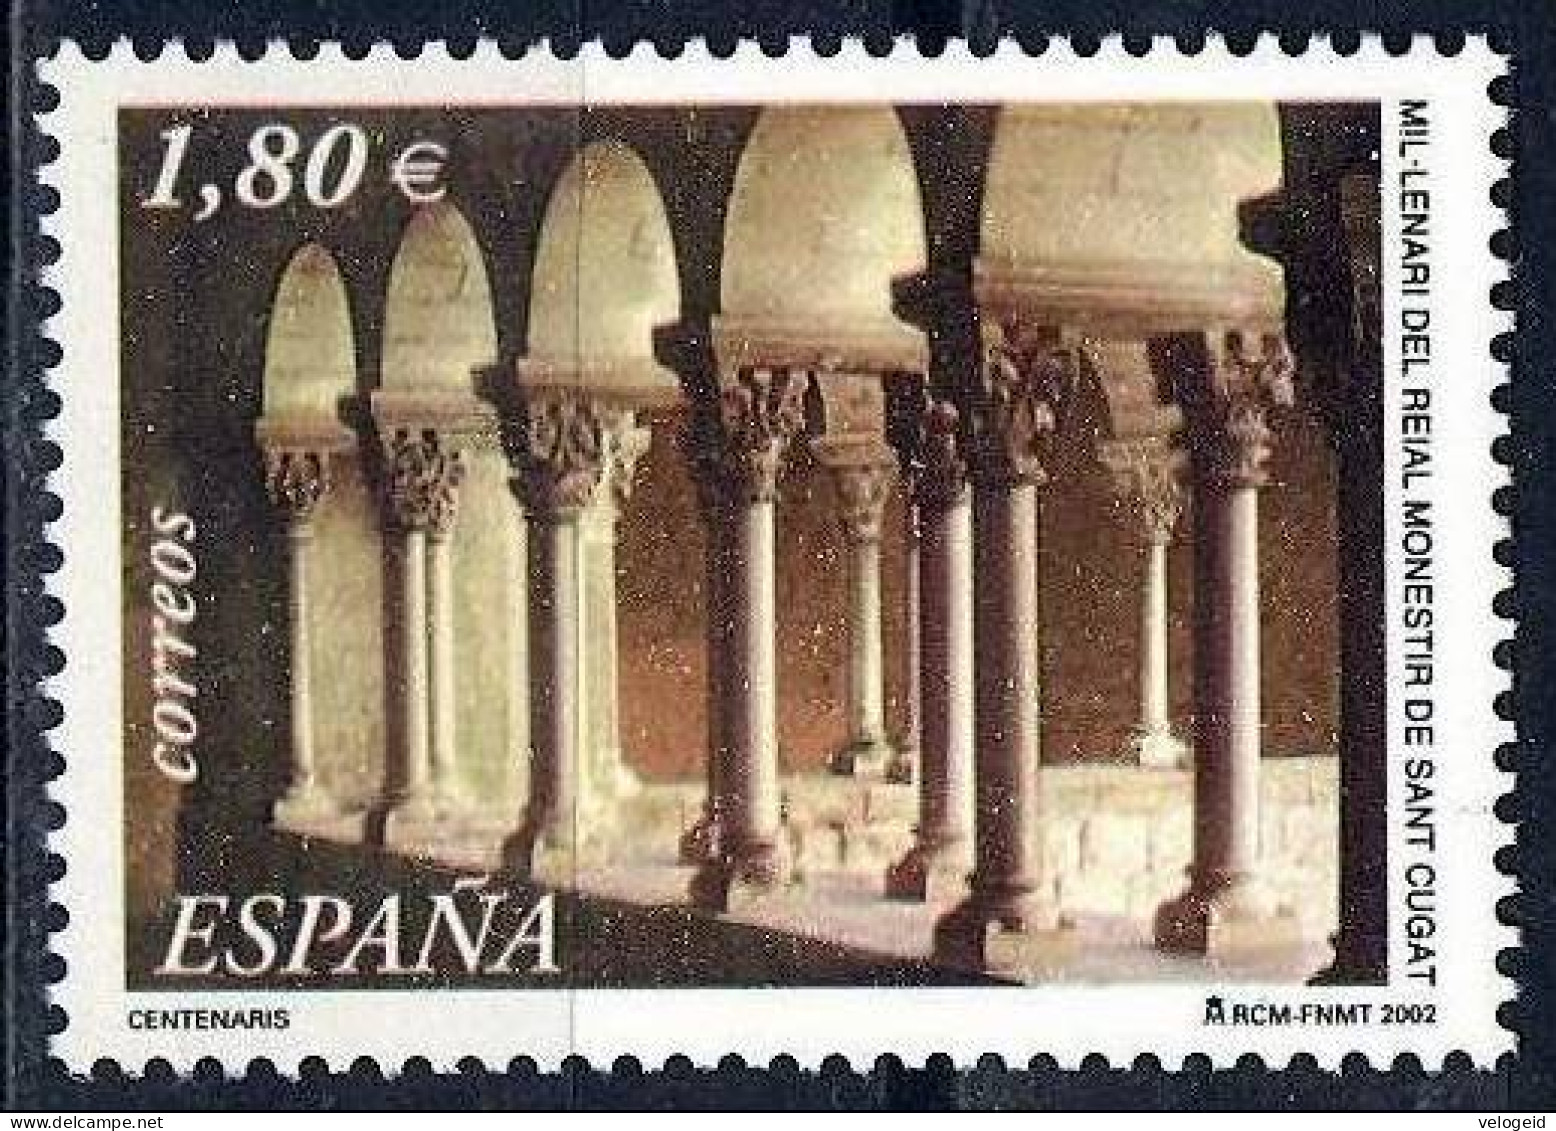 España. Spain. 2002. Monasterio De San Cugat. Claustro. Cloister. Monastery - Klöster